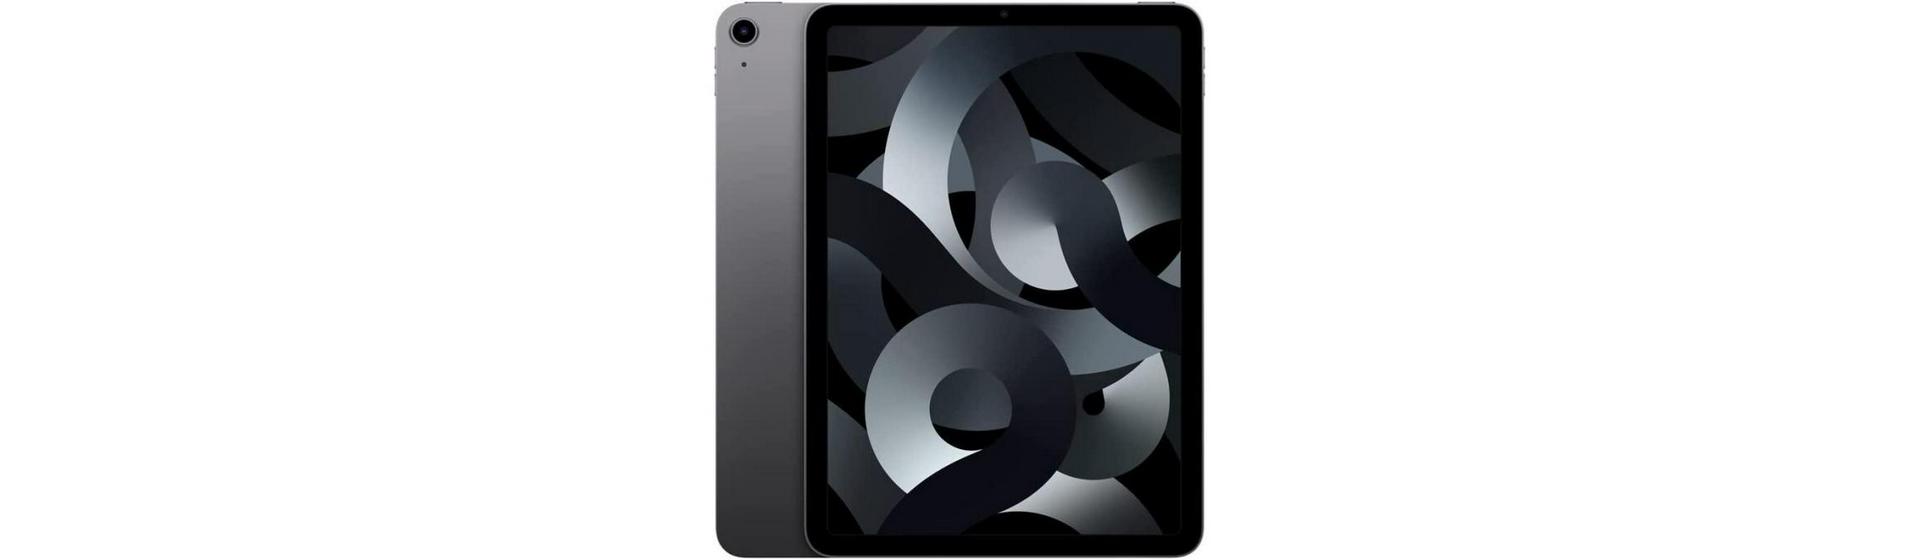 Promoção: iPad Air 5ª Geração 256GB por R$5363,00* no Mercado Livre